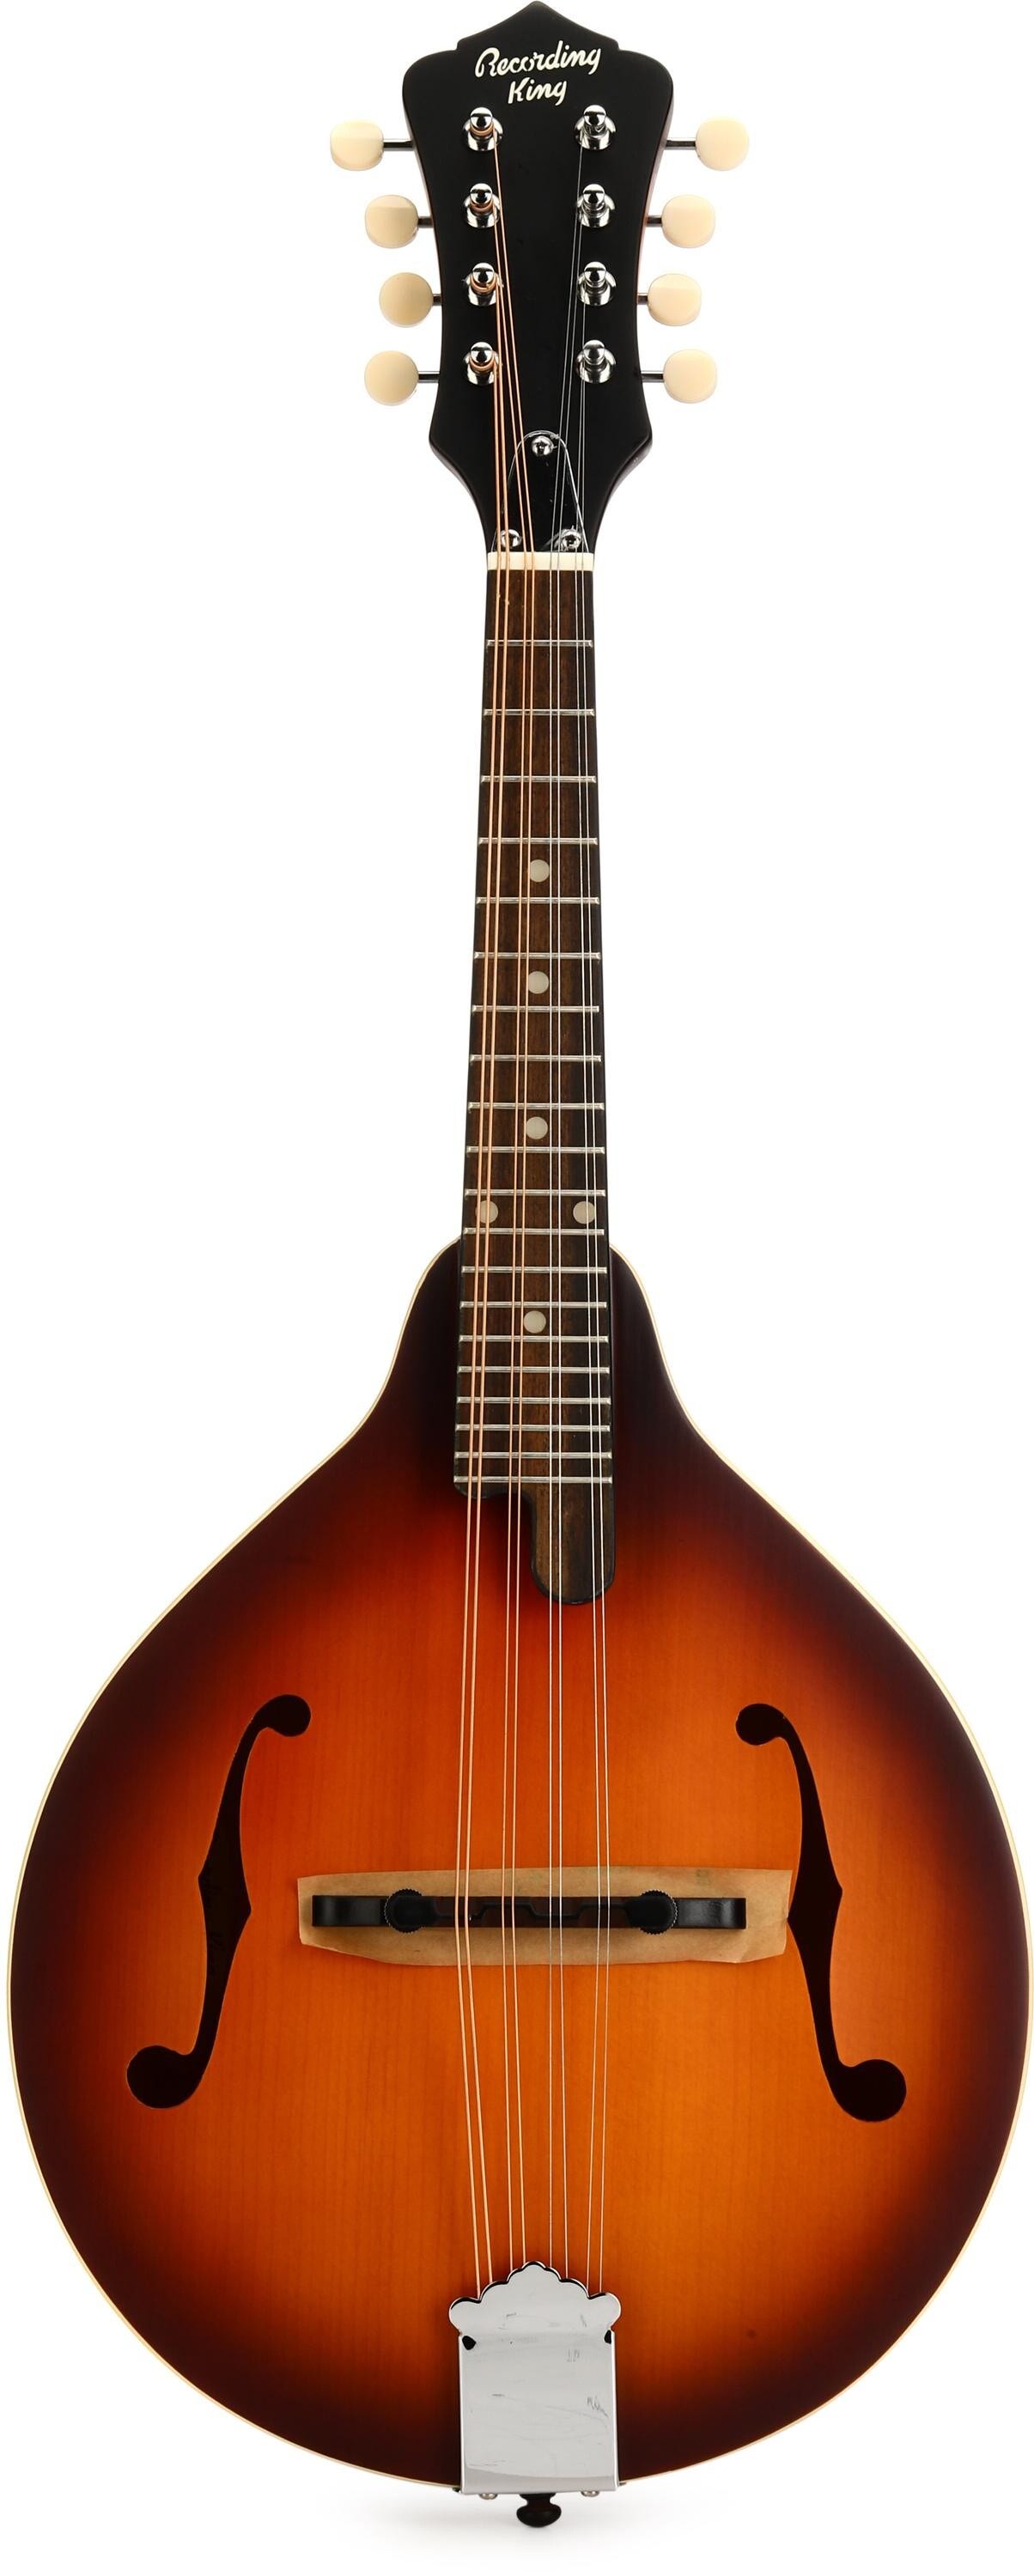 Vintage Mandolin Miniature, Wooden Mandolin Miniature, Musical